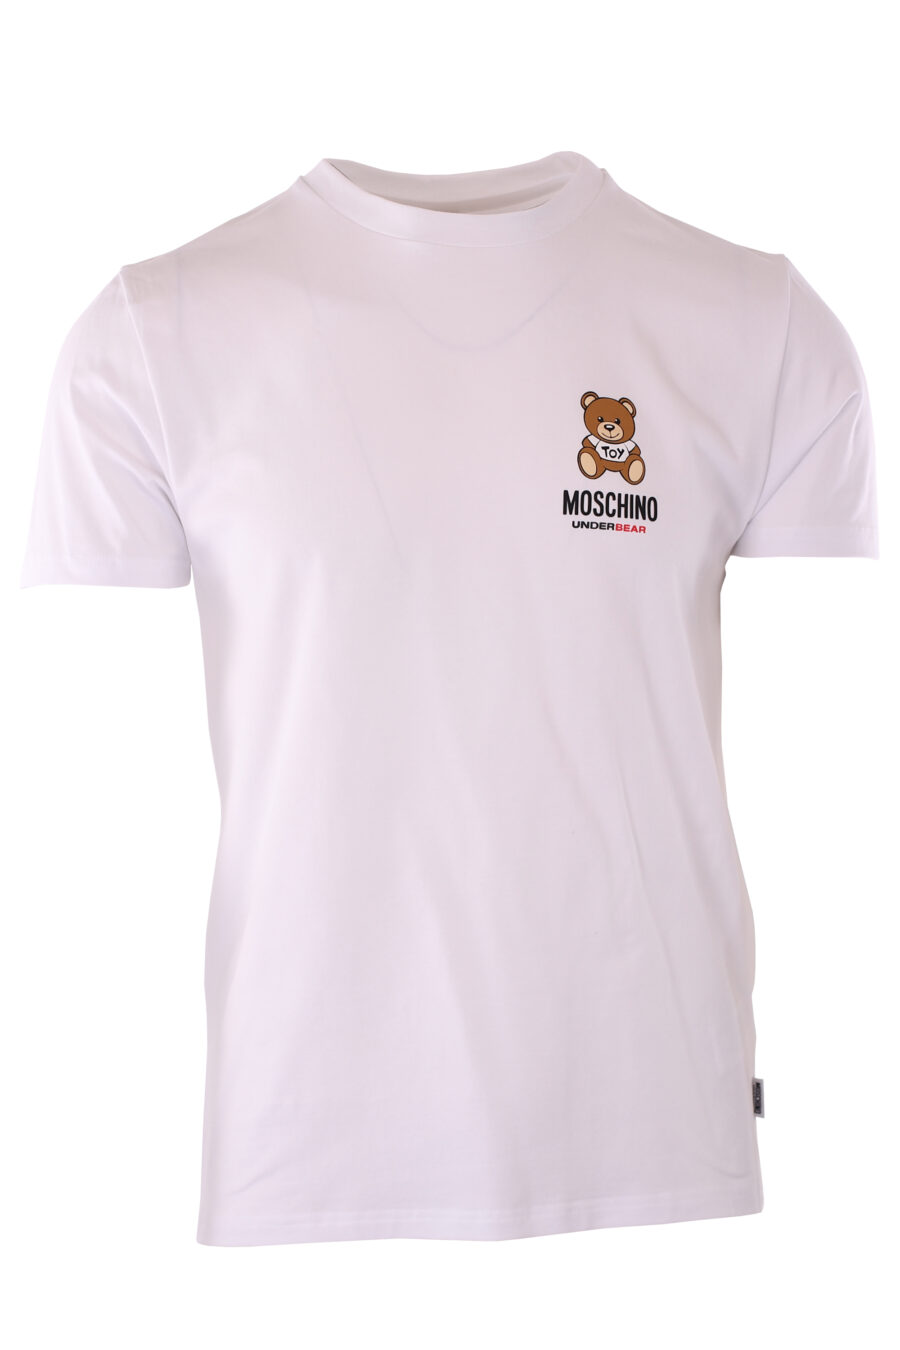 Camiseta blanca con logo oso pequeño "underbear" - IMG 6609